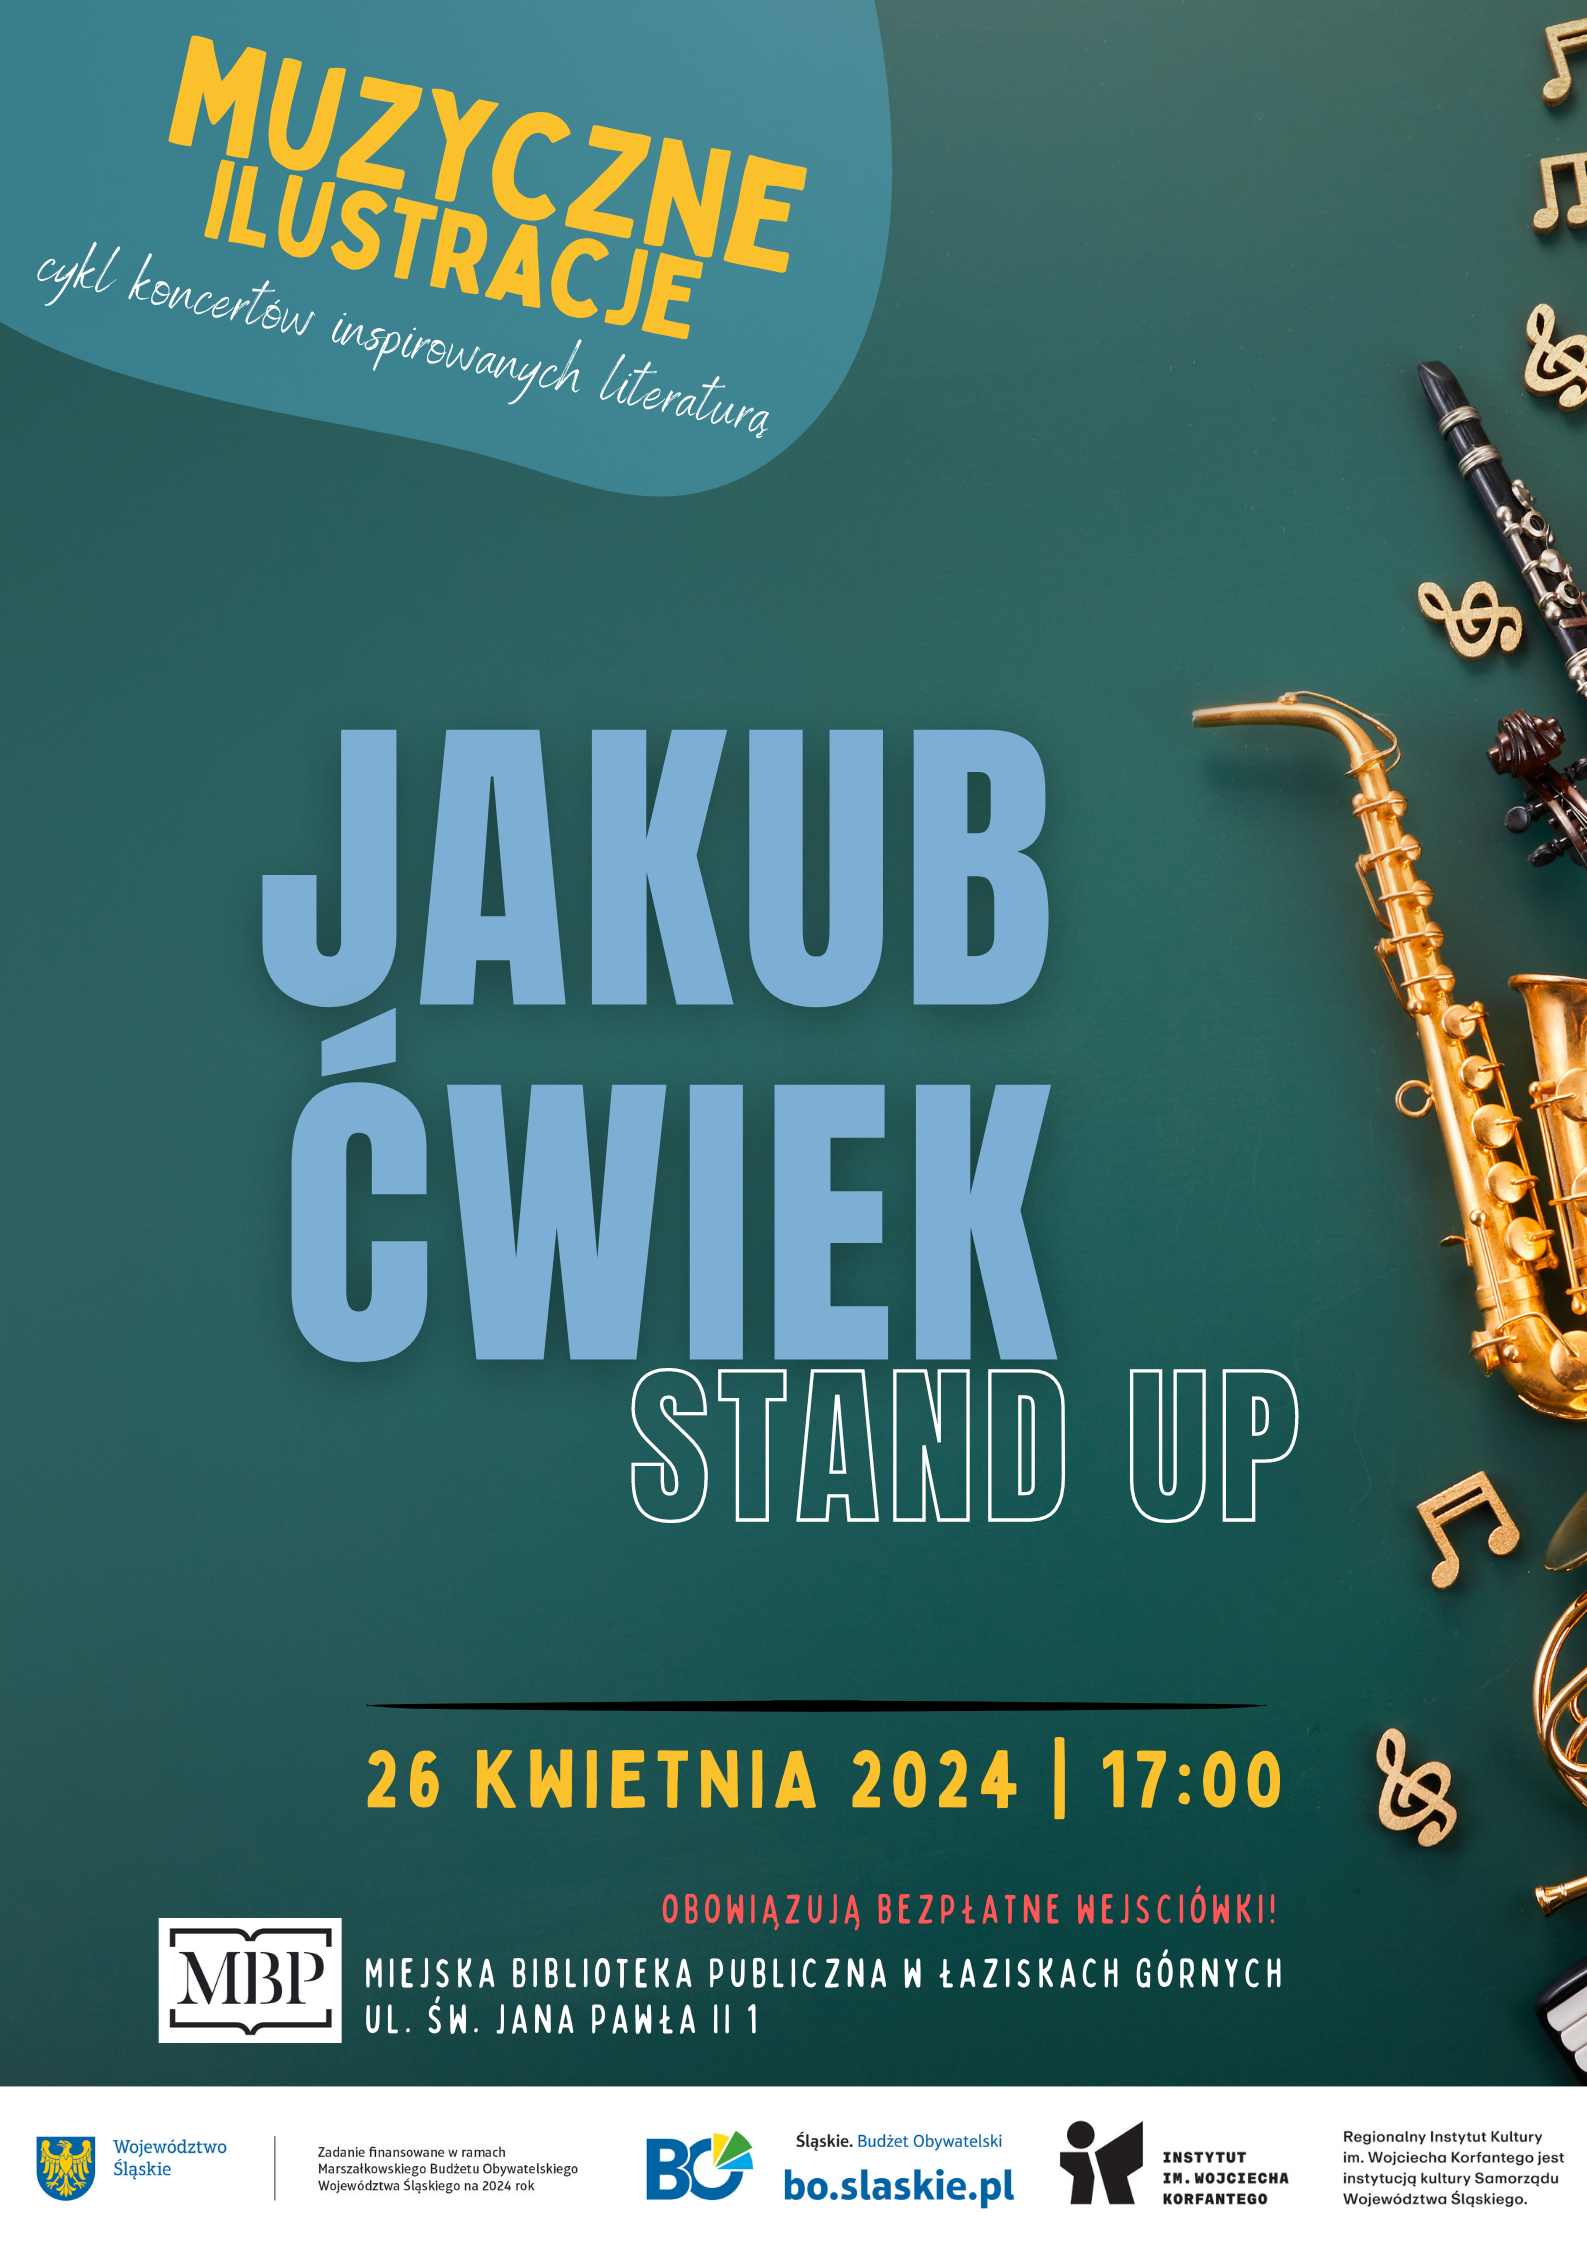 Plakat wydarzenia Muzyczne ilustracje - Stand up Jakub Ćwiek